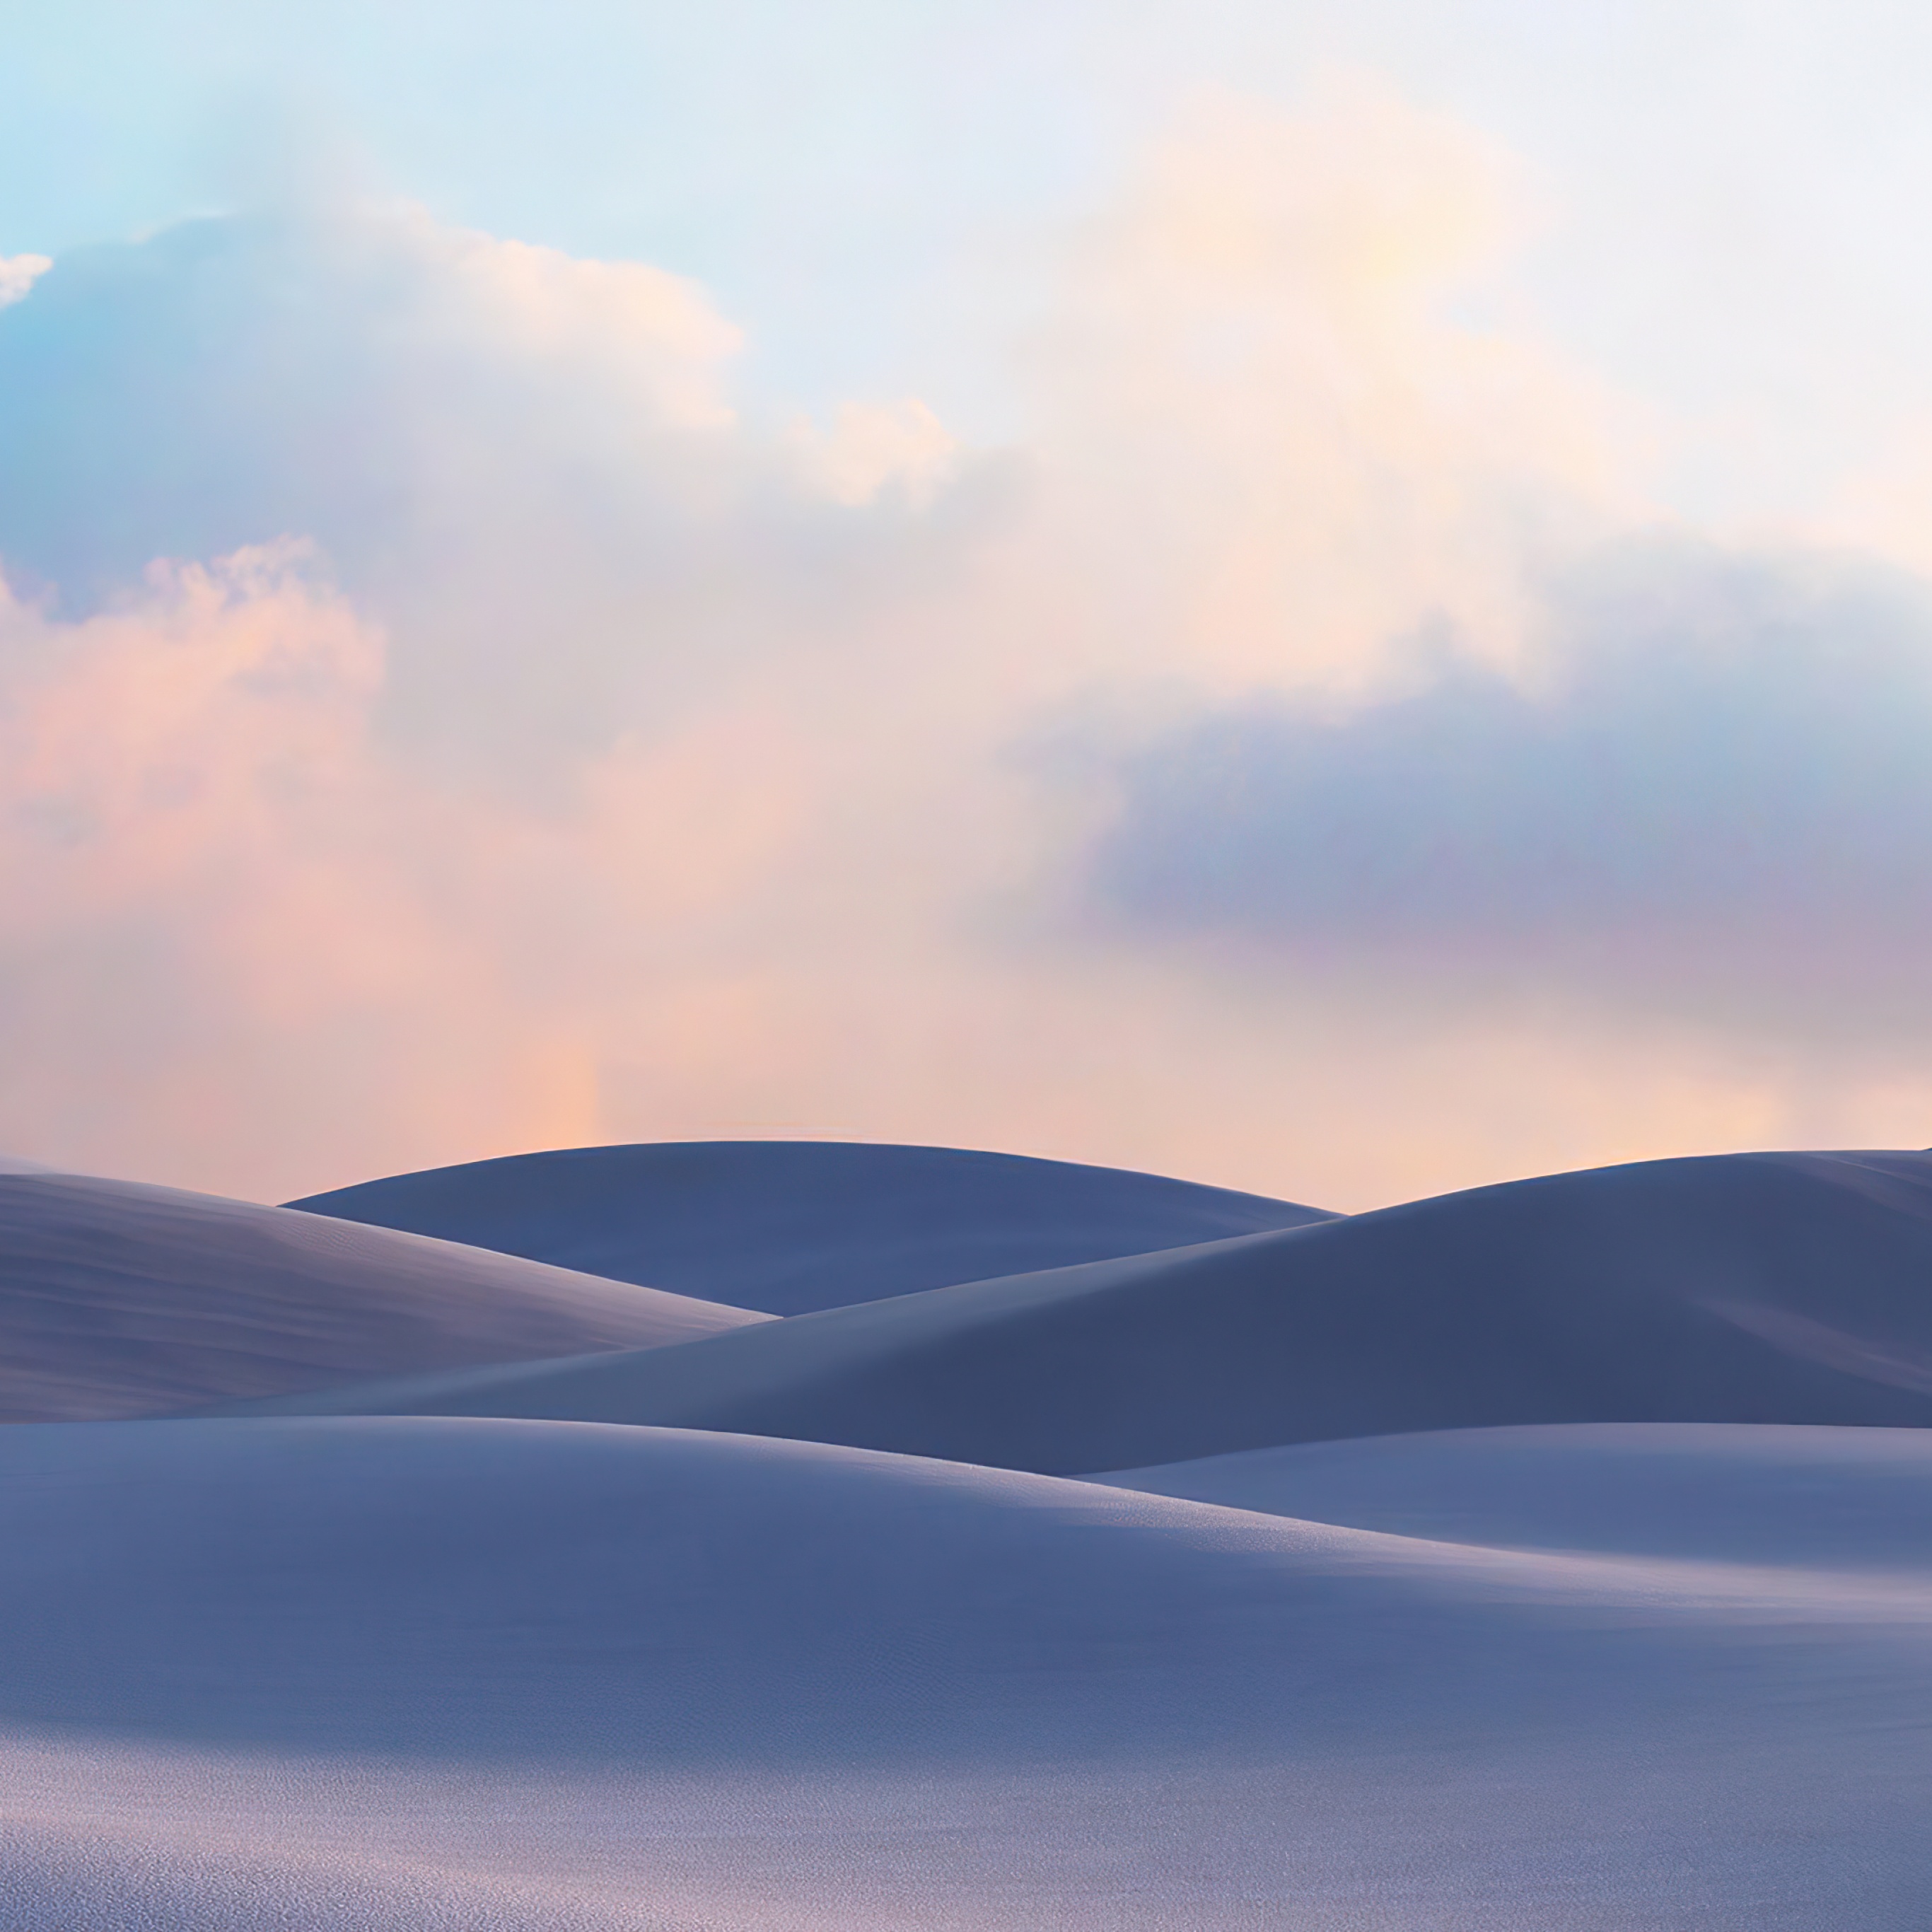 Windows 10X Wallpaper 4K, Sand Dunes, Desert, Landscape